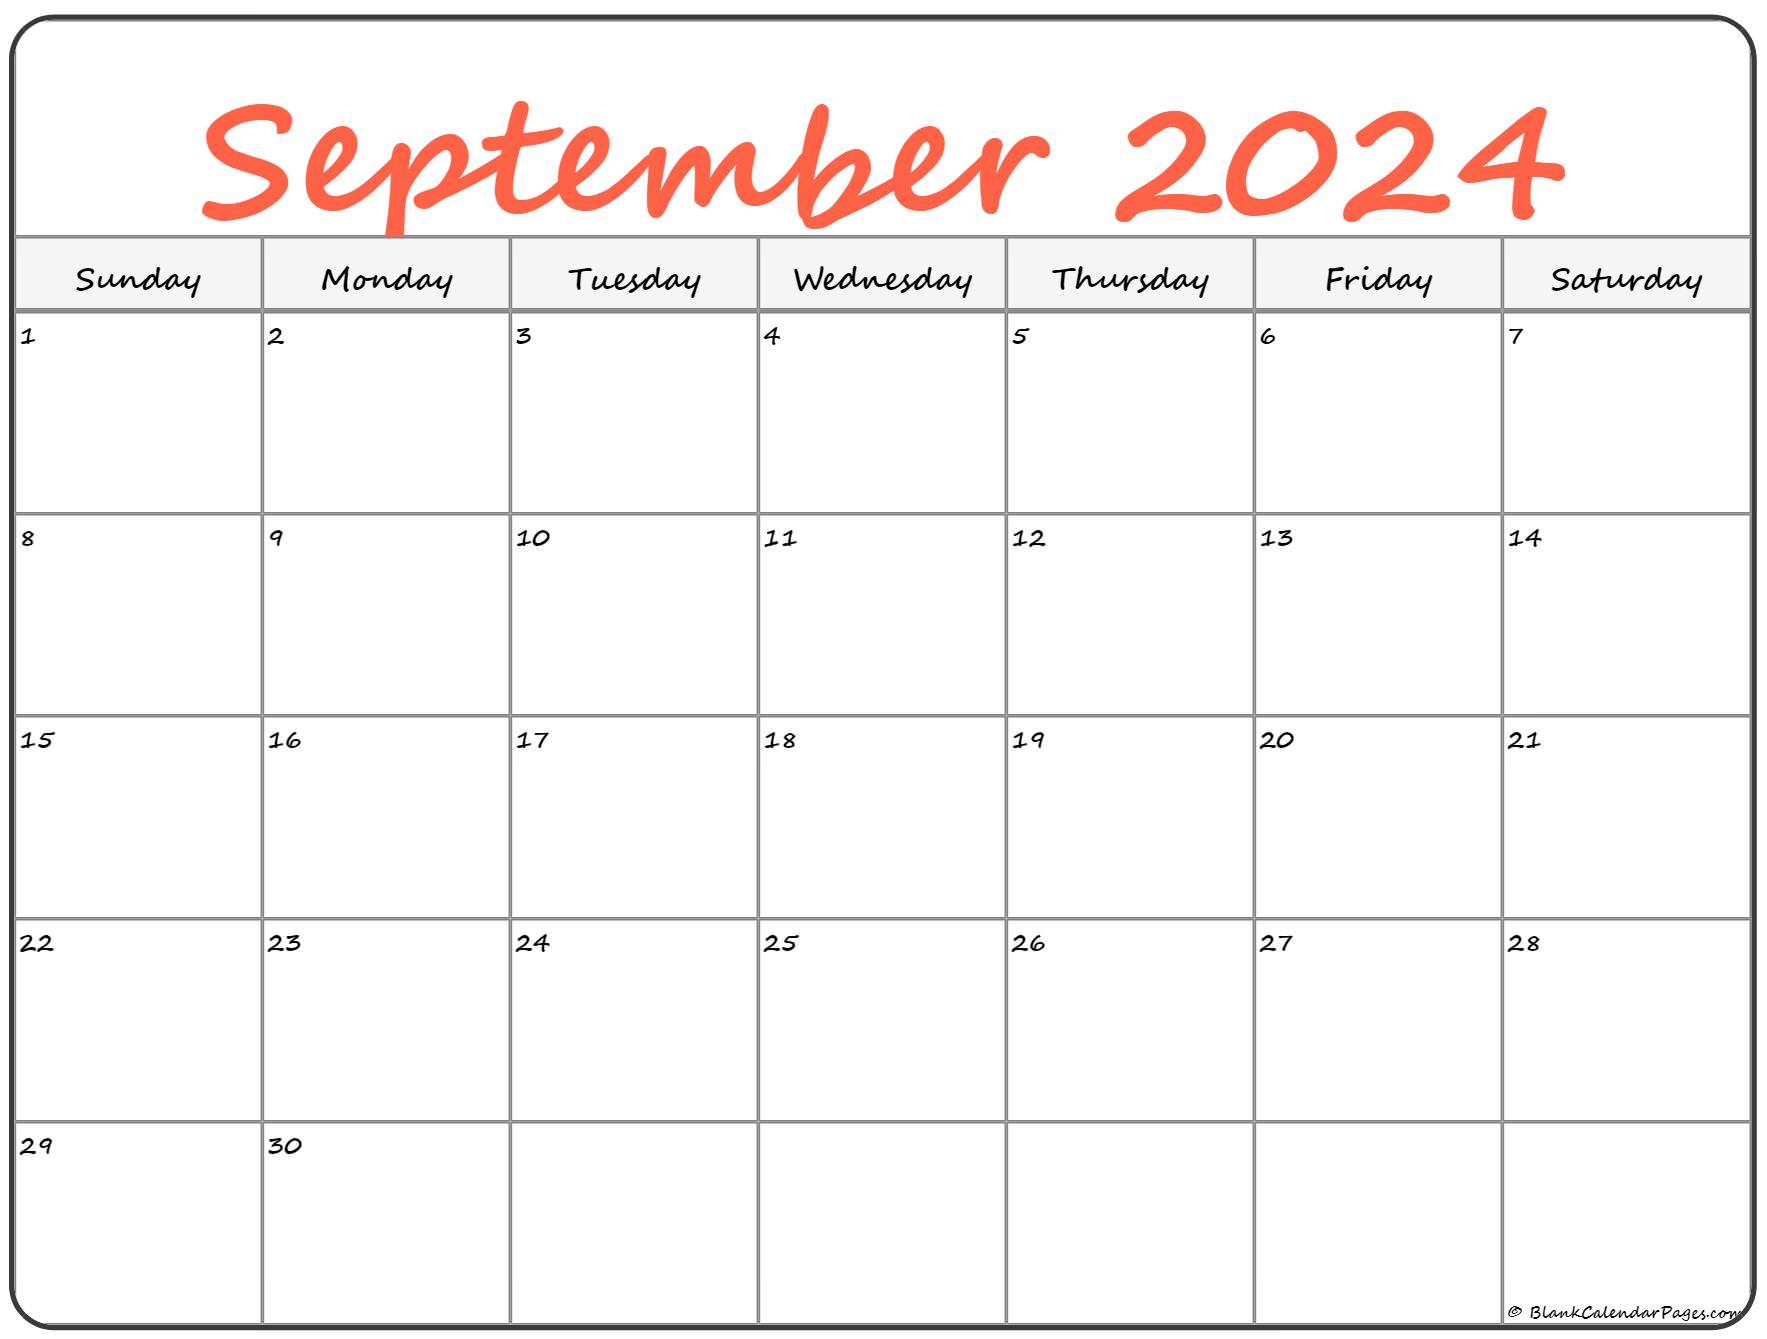 September 2022 Printable Calendar September 2022 Calendar | Free Printable Calendar Templates